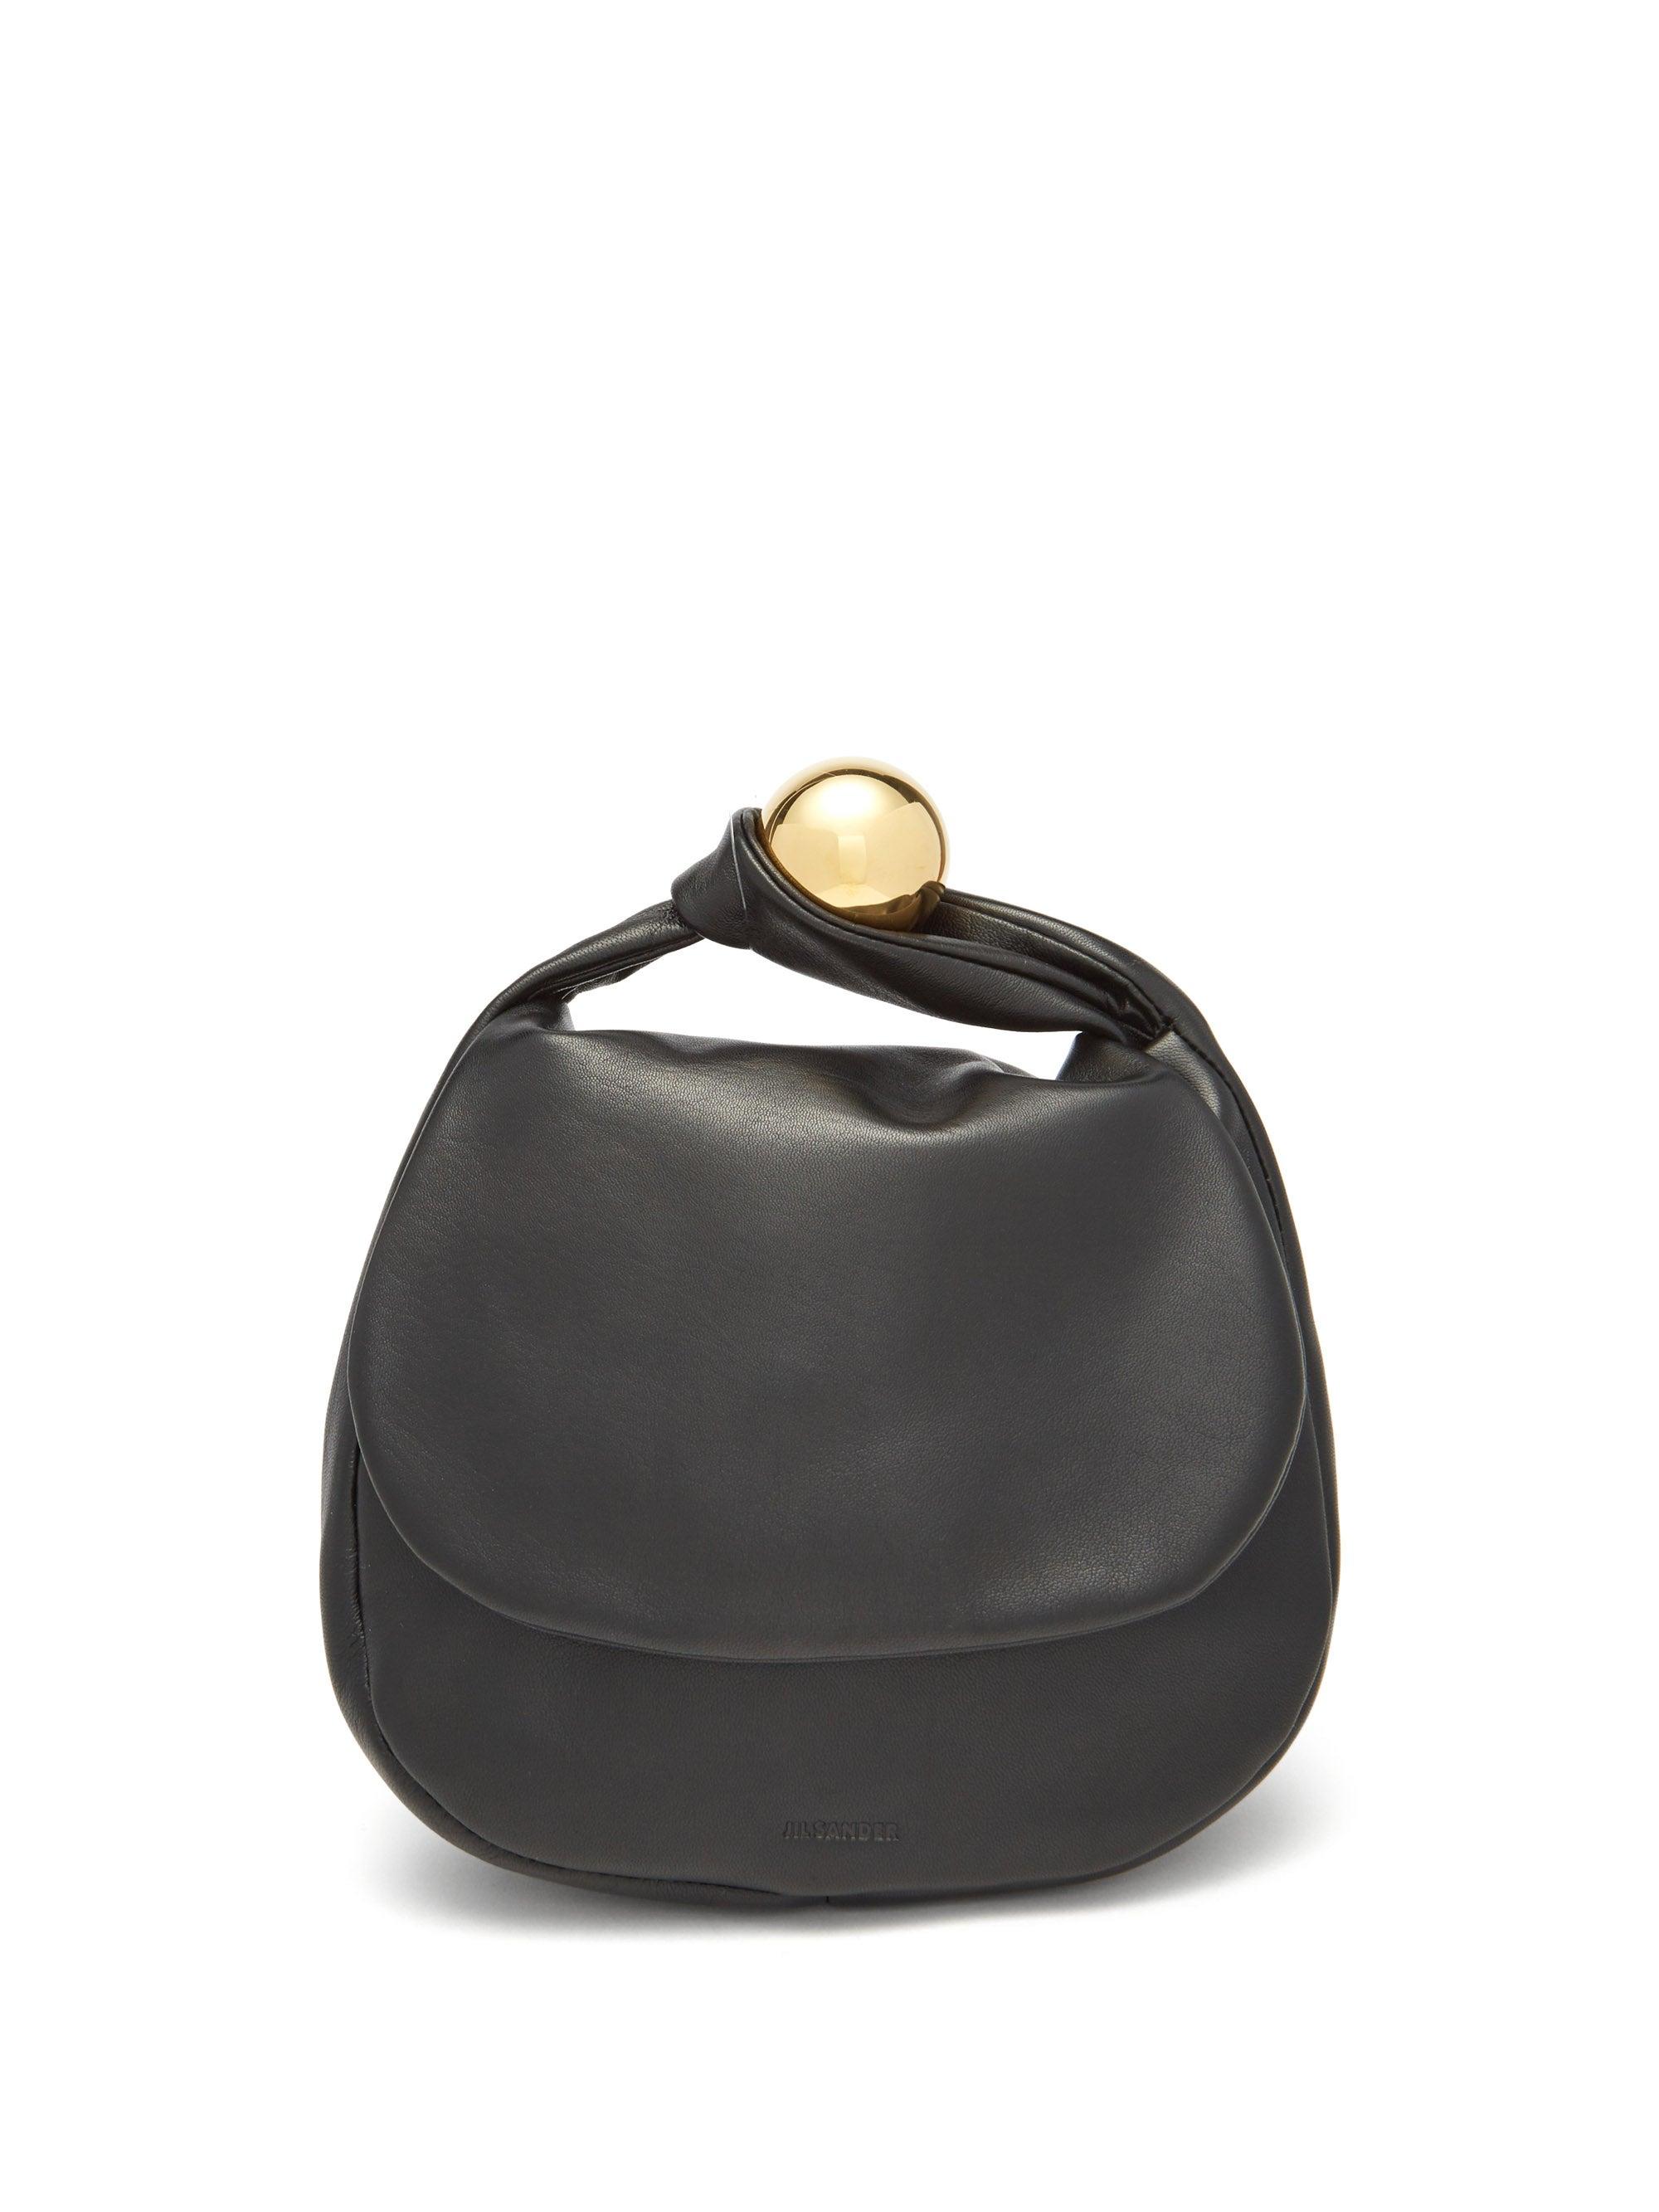 Jil Sander Sphere Medium Leather Clutch Bag in Black | Lyst